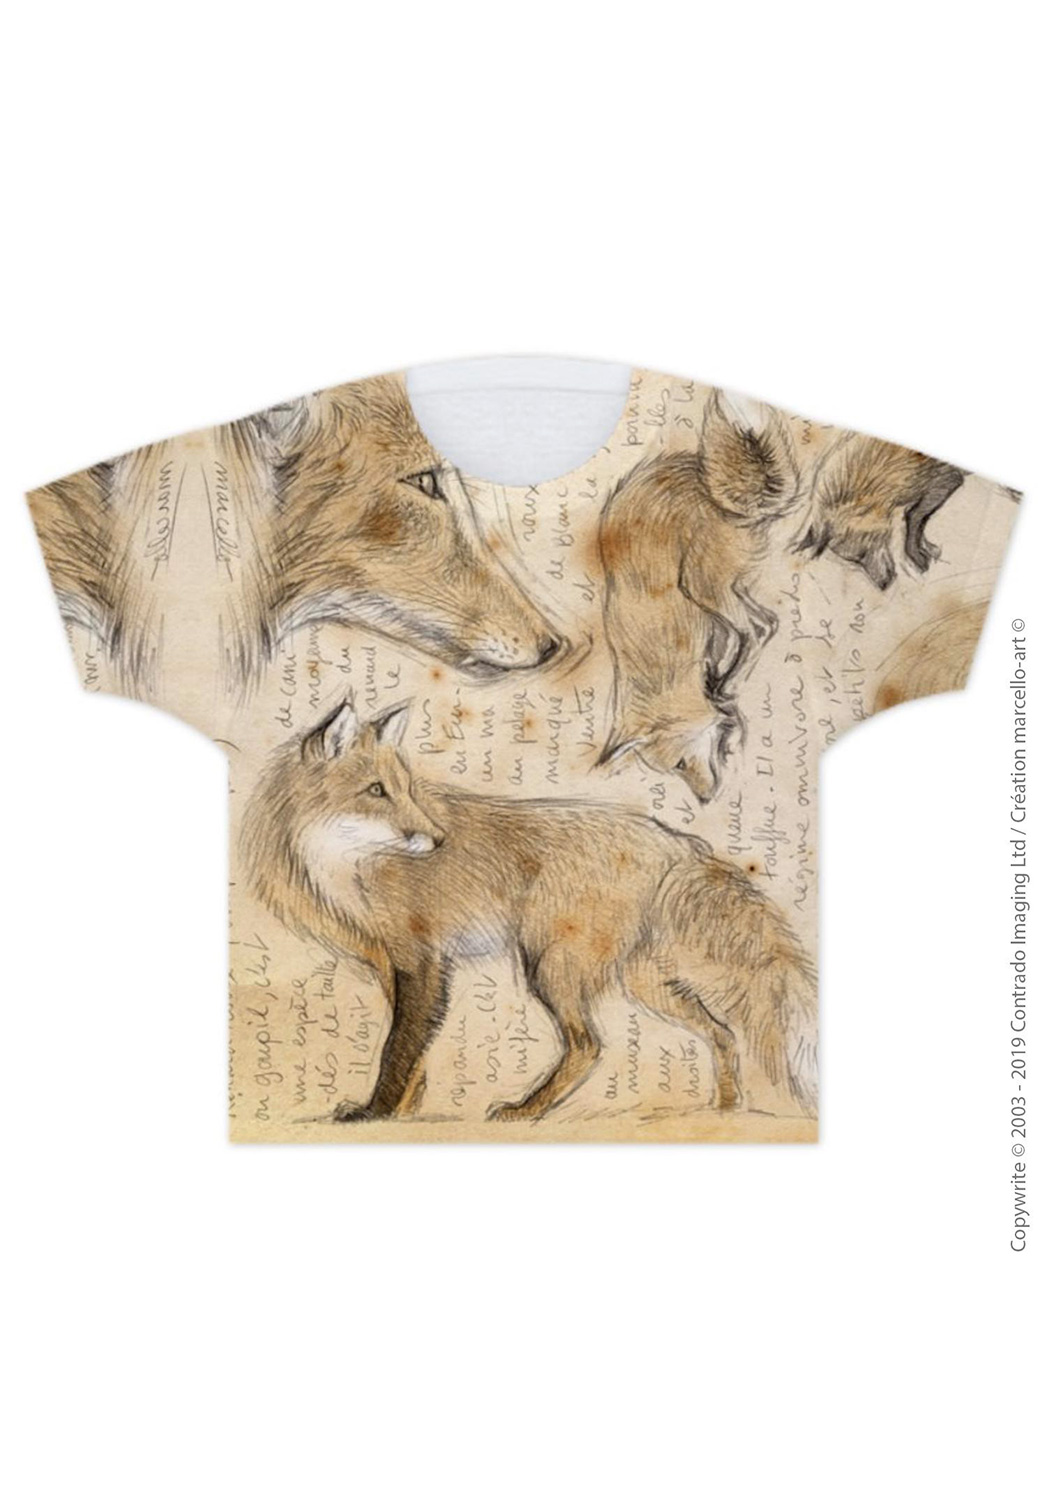 Marcello-art: T-shirt T-shirt 336 Red fox